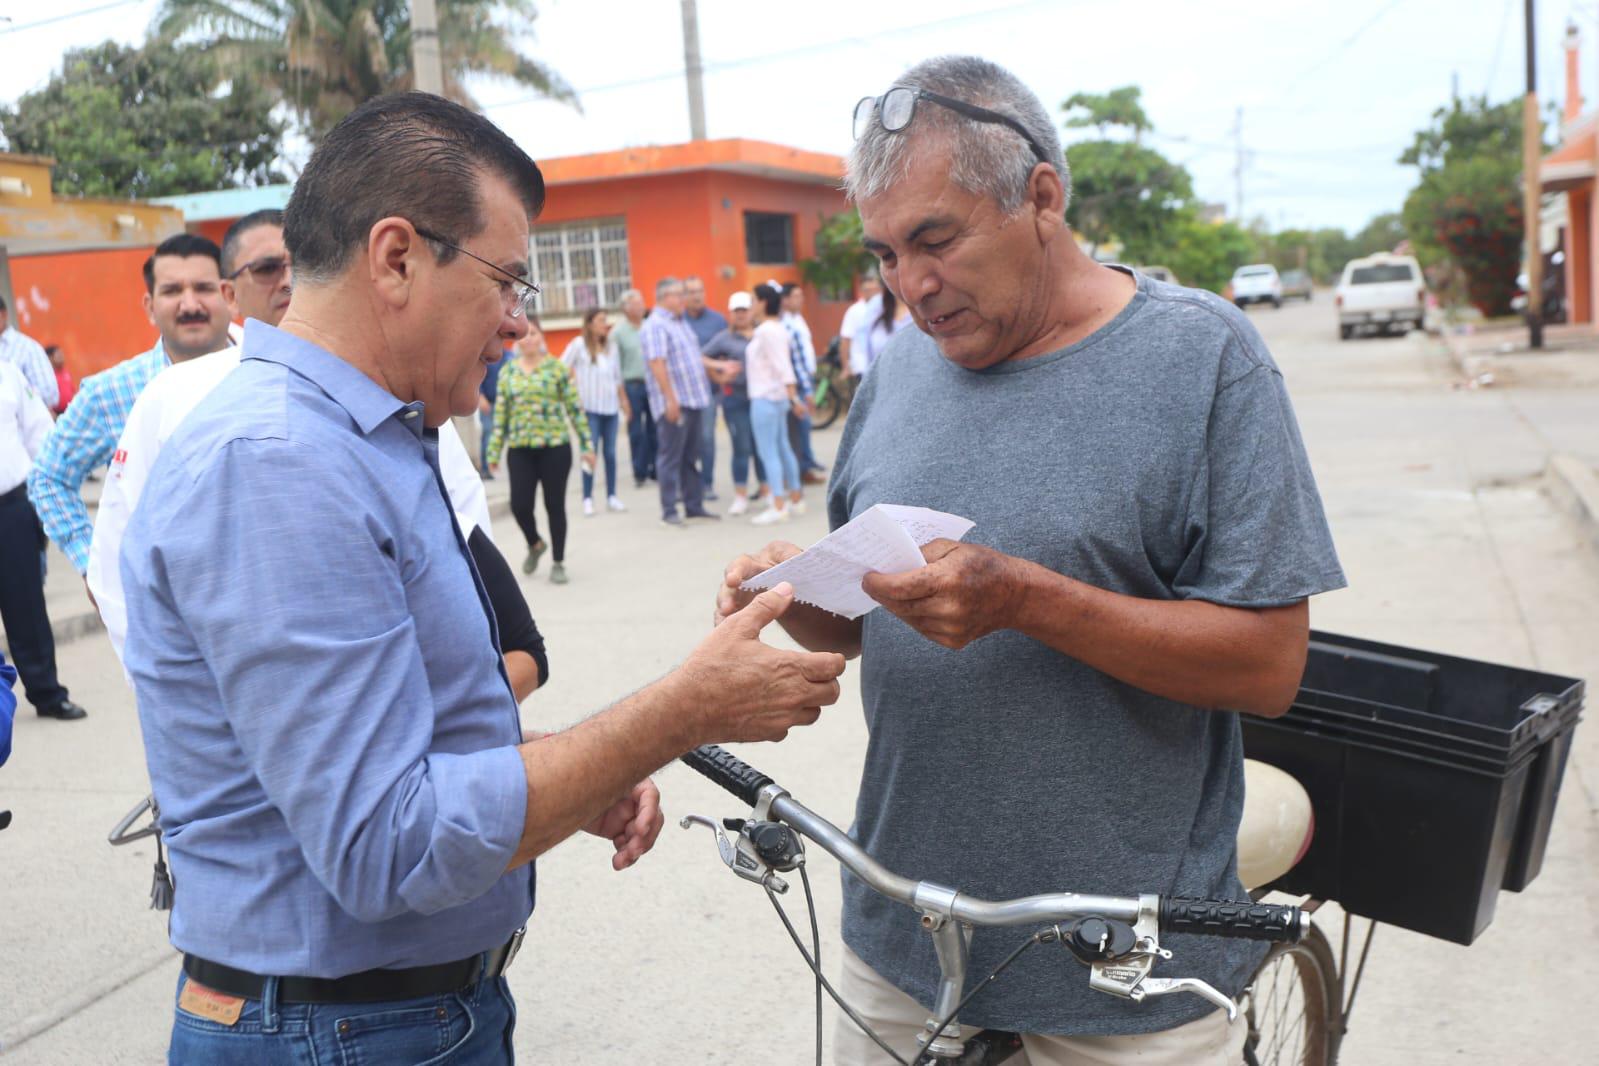 $!Piden a Alcalde certeza jurídica de predios en Colonia Rafael Buelna